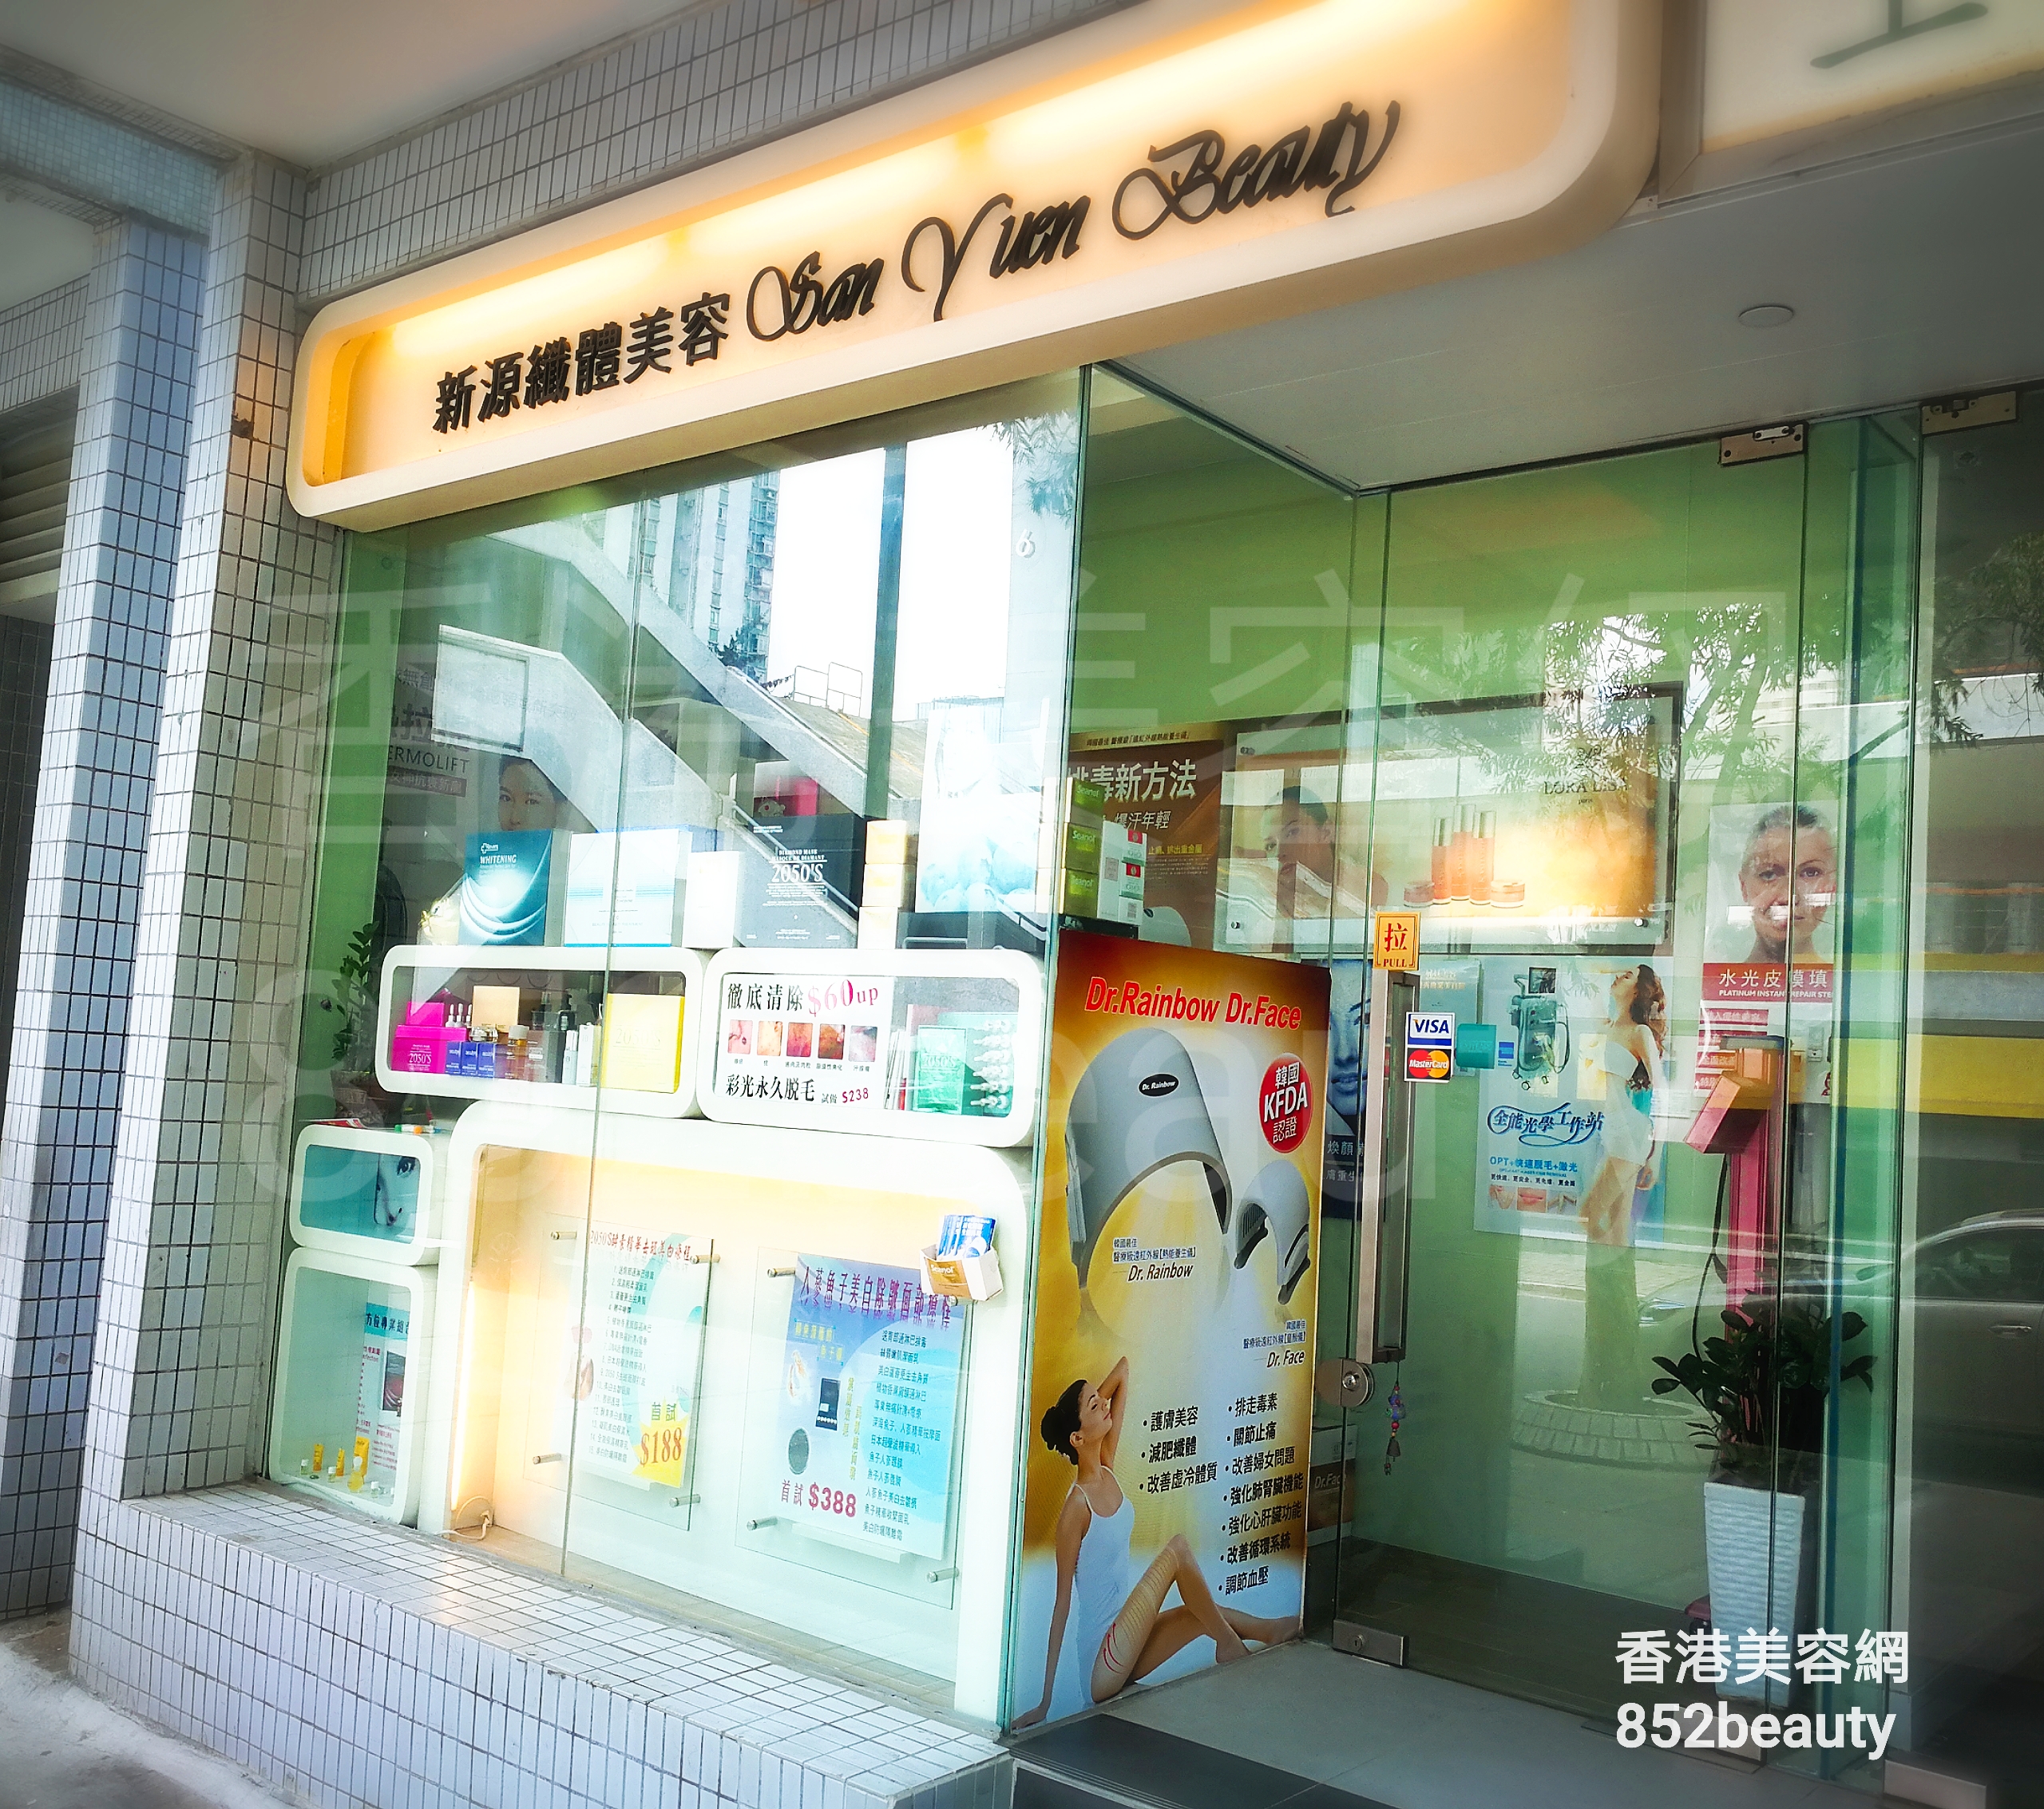 香港美容網 Hong Kong Beauty Salon 美容院 / 美容師: 新源纖體美容